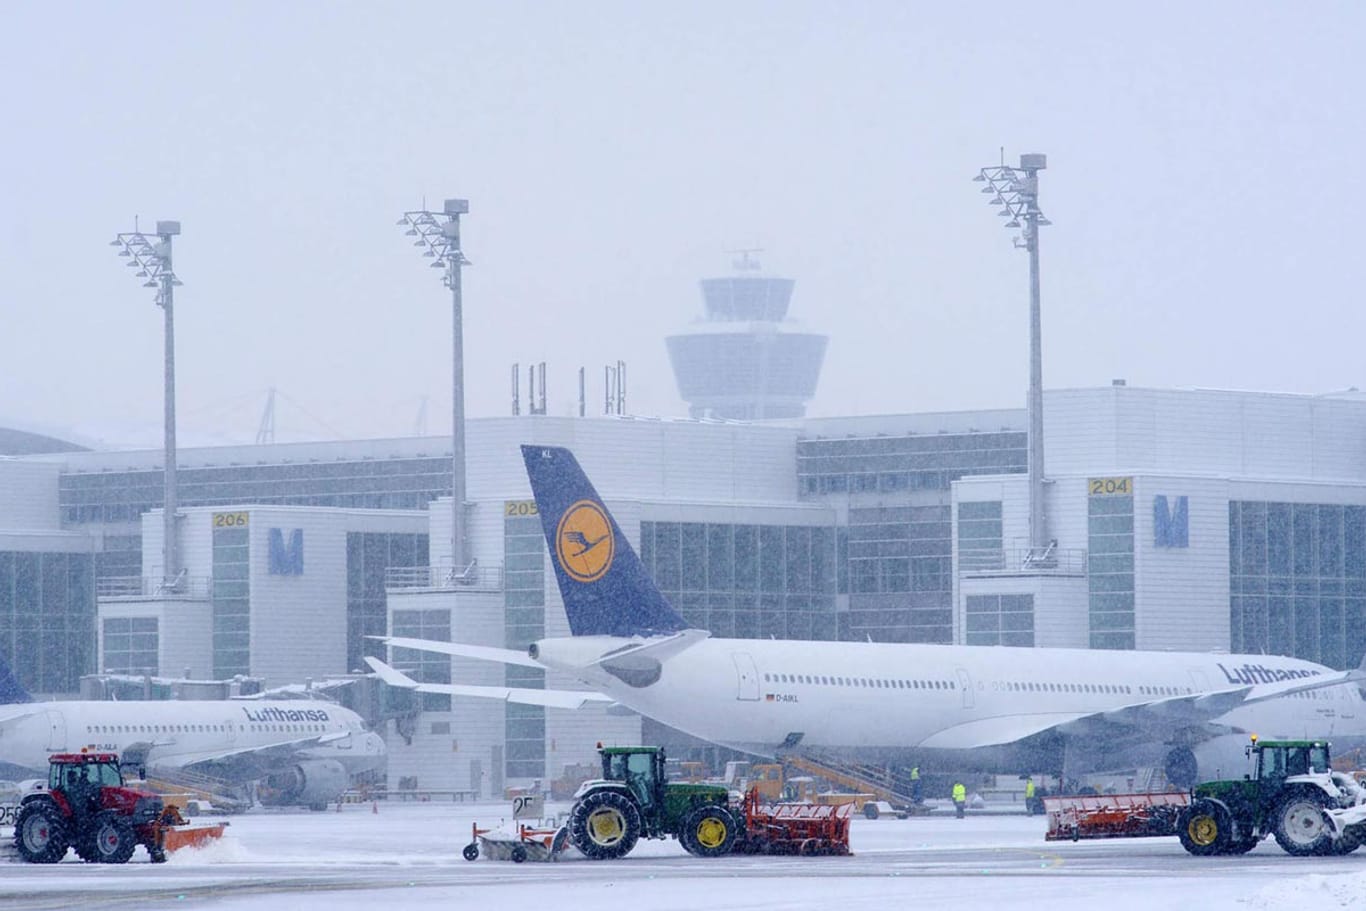 Verschneiter Flughafen in München: Zuletzt gab es nur wenige Tage, an denen so viel Schnee lag.